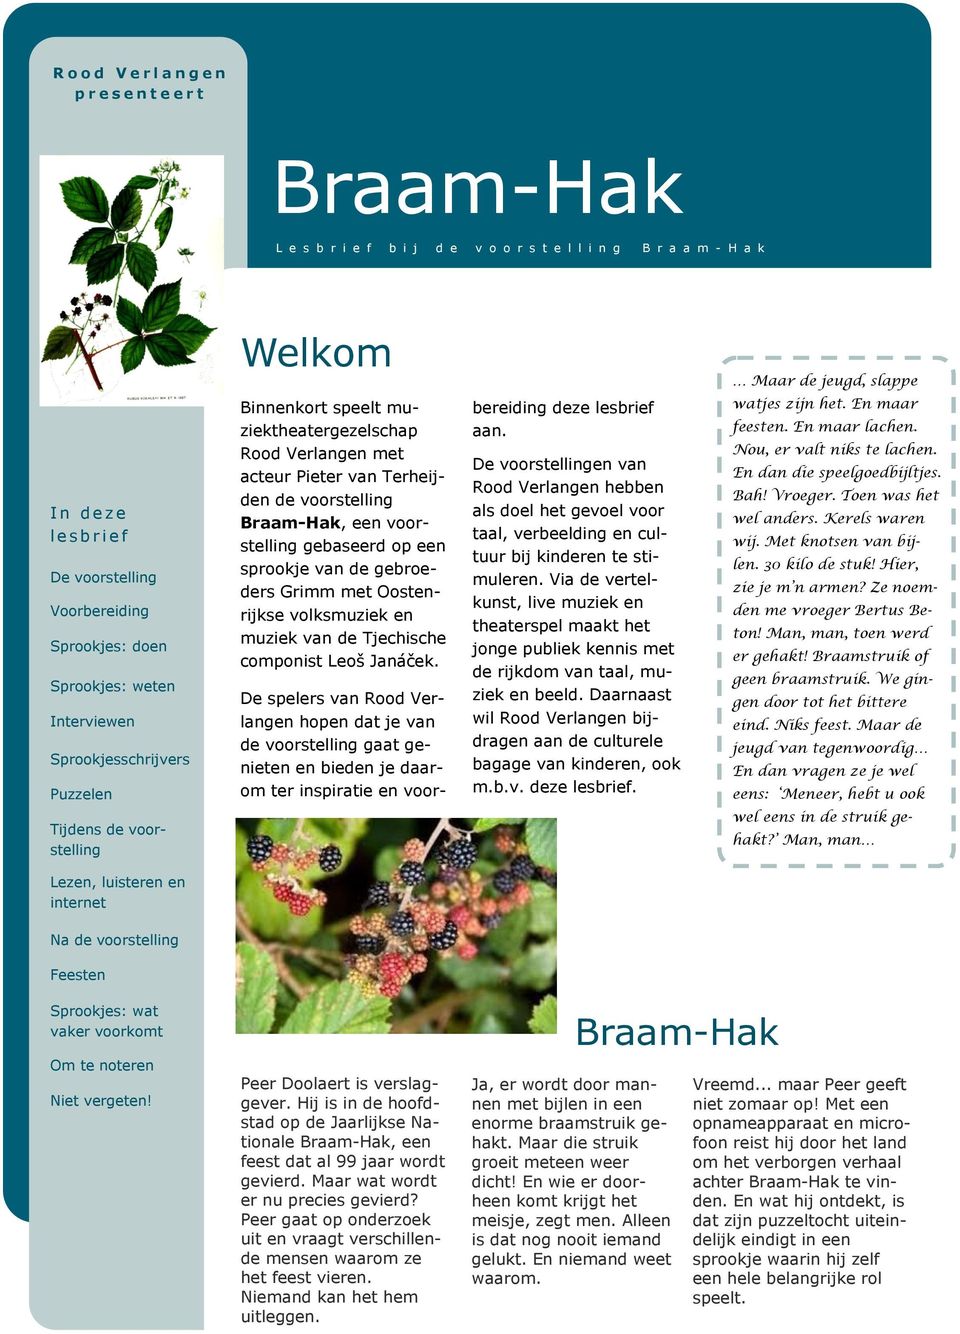 Braam-Hak, een voorstelling gebaseerd op een sprookje van de gebroeders Grimm met Oostenrijkse volksmuziek en muziek van de Tjechische componist Leoš Janáček.